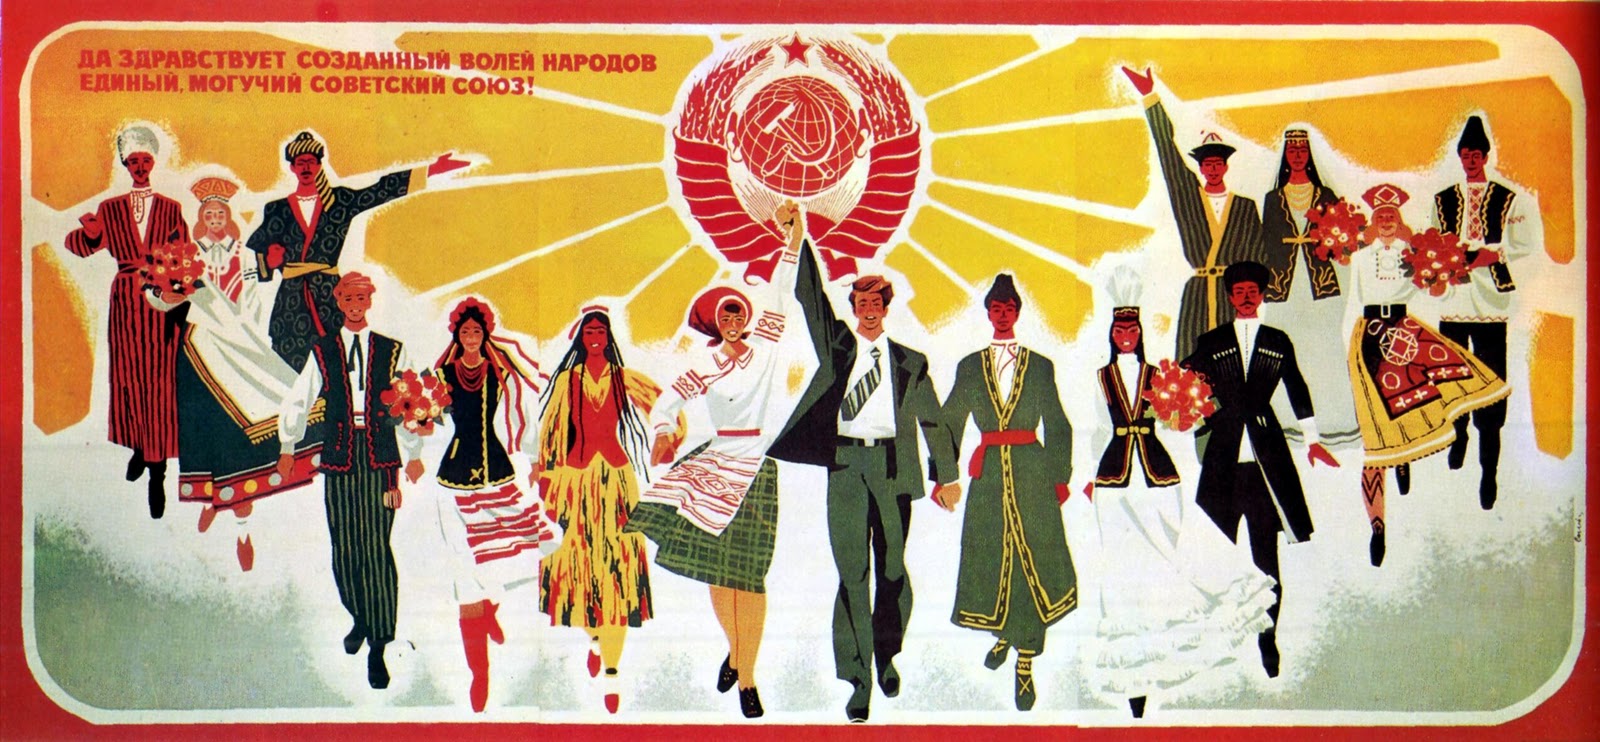 Советский плакат. Да здравствует созданный волей народов единый могучий Советский Союз